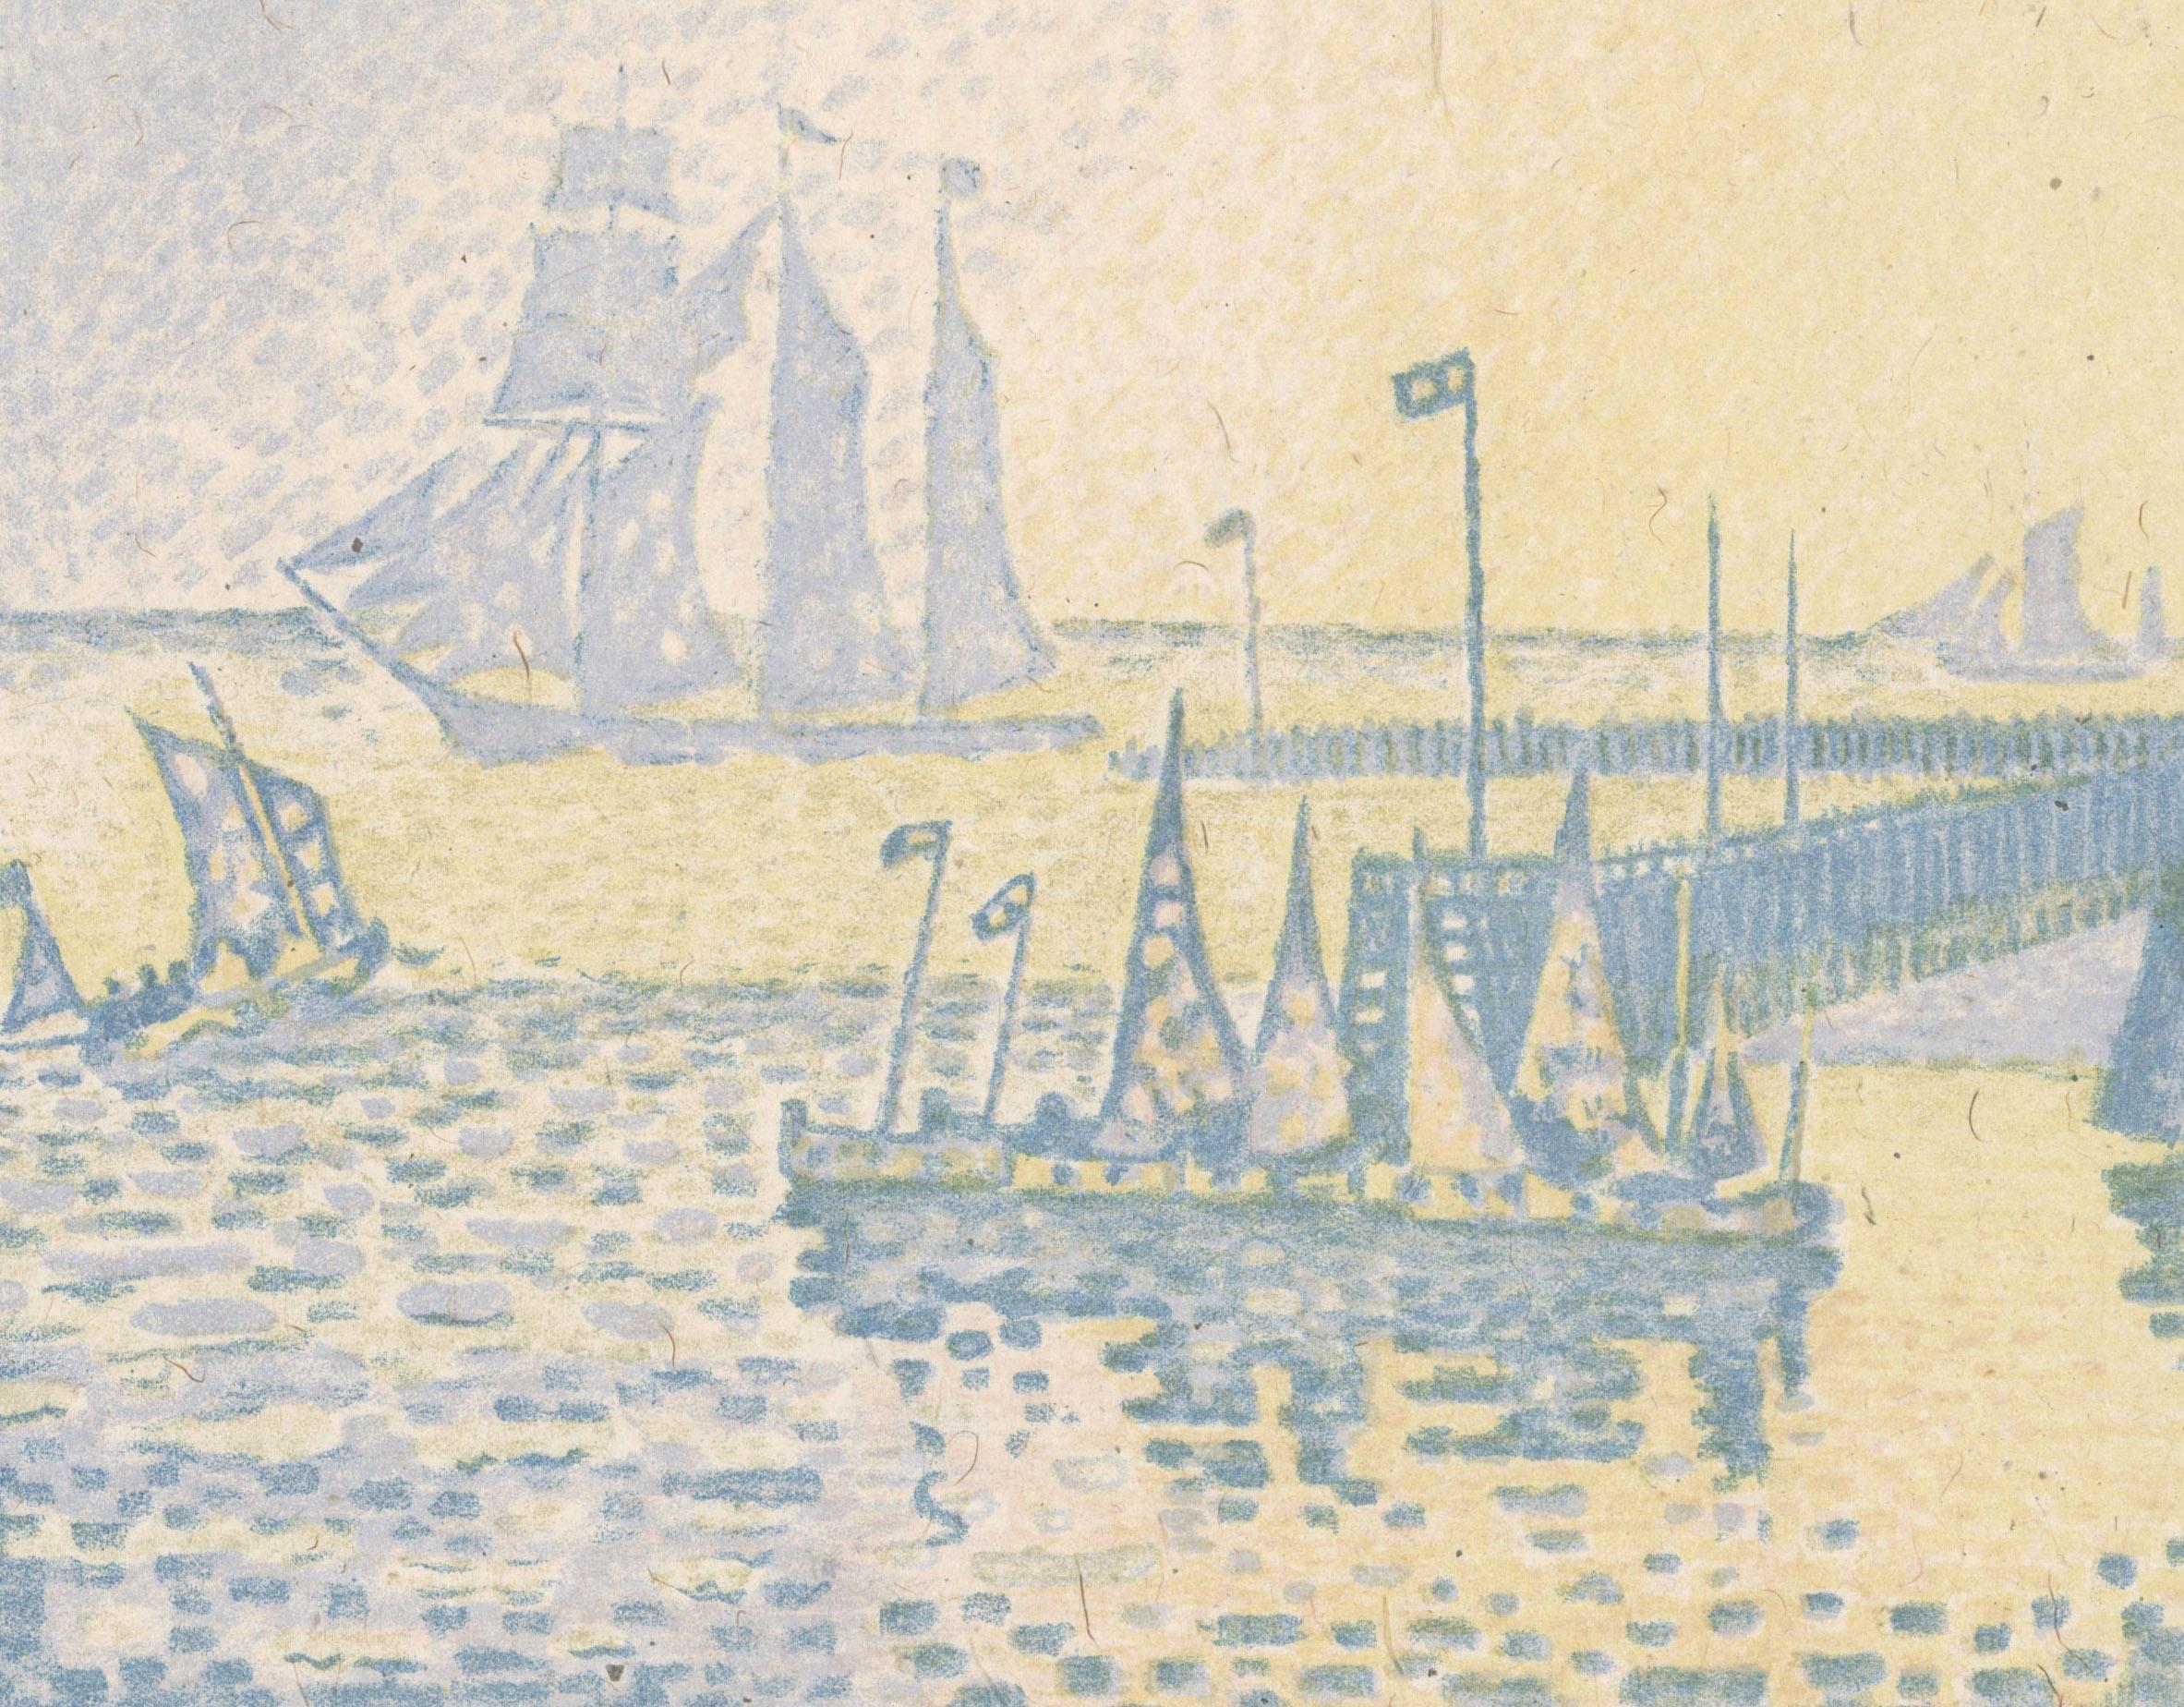 Abend or Le Soir La Jetée de Flassingue (Evening, The Pier at Vlissingen)
Color lithograph, 1898
Unsigned (as issued)
As published in 